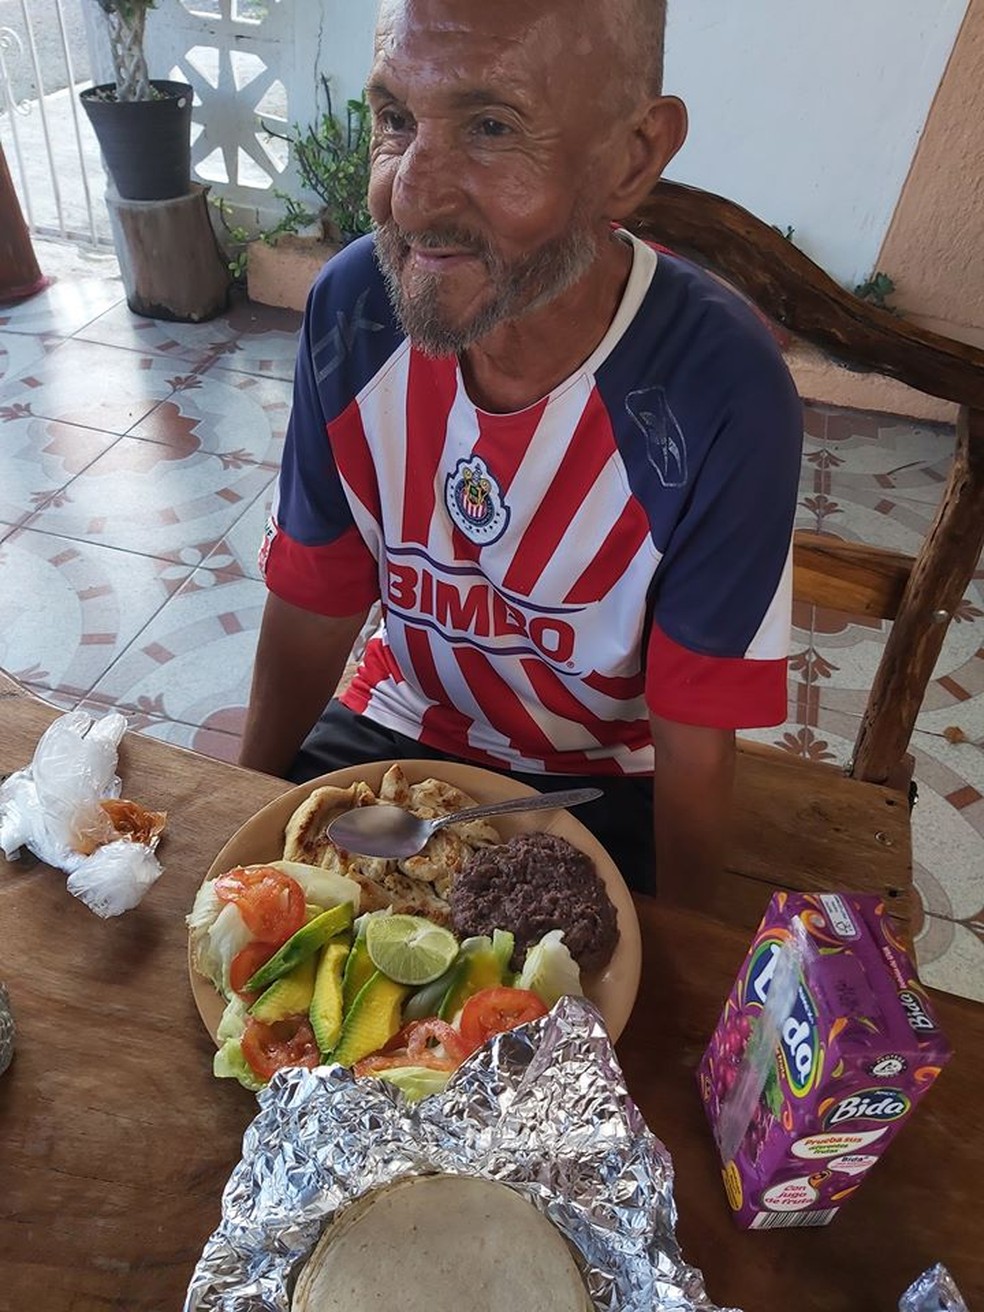 José Adán apreciando uma refeição digna após ser ajudado por moradores de Campeche — Foto: Reprodução/Facebook/Fabián González Alcocer